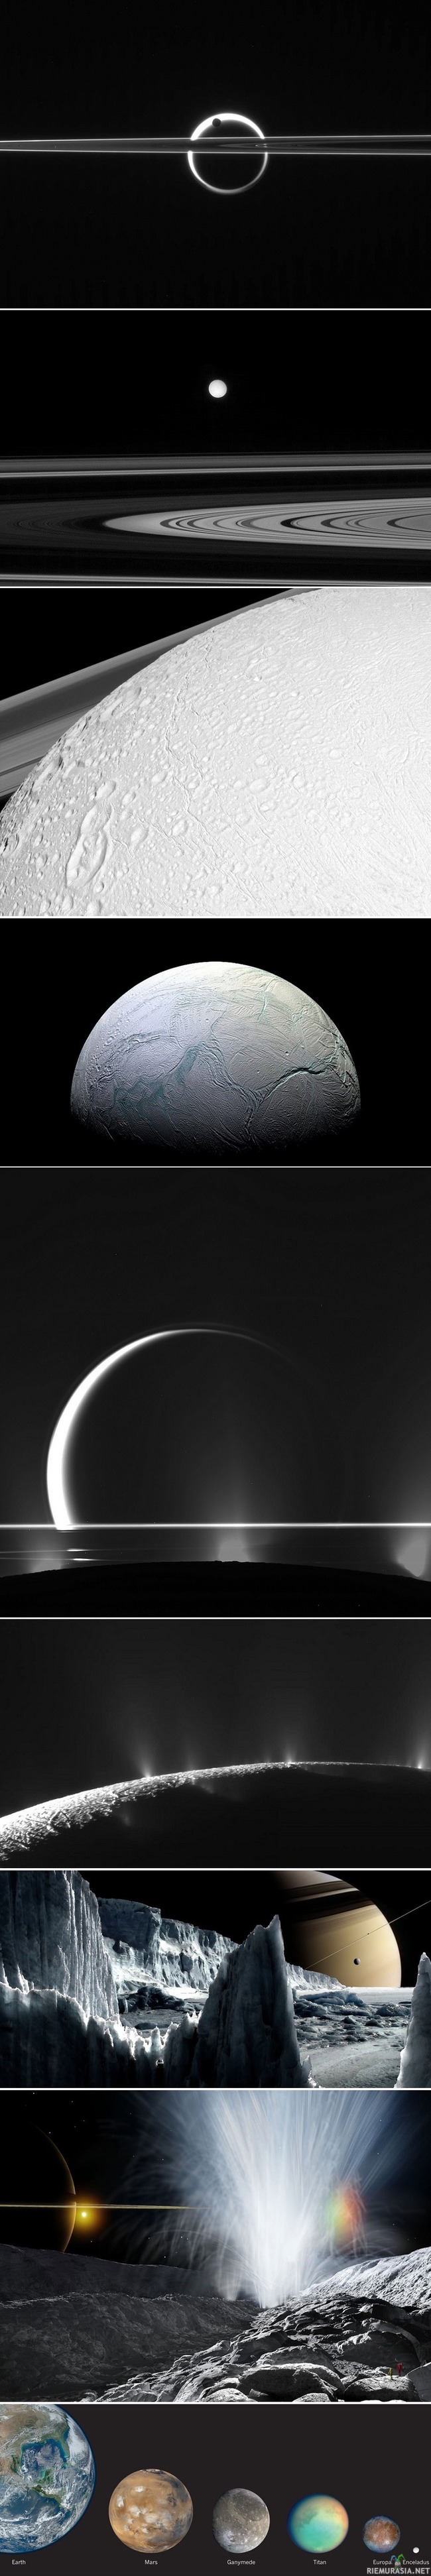 Enceladus - Kohteen etäisyys Maasta 1,3 miljardia km. (3 alin ja toiseksi alin ovat piirroskuvia Enceladus-kuusta).

Avaruuden mittakavaat ovat usein suuria ja valovuosia käytetään usein ilmaisemaan jonkin etäisyys mutta Saturnuksen Enceladus-kuu on avaruudenmittakaavassa pieni. Sen halkaisija on vain noin 500km, eli sama matka suunnilleen kuin Kouvolasta Tukholmaan suoraa linjaa. Painovoima Enceladuksen pinnalla on vain 11 % siitä, mitä Maan pinnalla koetaan, tämä tarkoittaa sitä että sinä tuntisit olisi siellä 10 kertaa kevyempänä mitä Maassa.

Yksi Enceladuksen kierros Saturnuksen ympäri kestää noin 33 tuntia. Monien muiden kuiden tapaan se on lukittunut Saturnukseen niin, että aina sama puoli on Saturnukseen päin.
Enceladusen pinta koostuu käytännössä jäästä, ja se on yksi aurinkokuntamme vaaleimmista heijastaen suurimman osan auringonvalosta takaisin avaruuteen. Enceladuksella on aktiivisia jäisiä tulivuoria. Nämä jäiset tulivuoret puskevat planeetan pinnalle pääosin vettä. Tulivuoret tuottavat kuulle heikon, pääosin vedestä koostuvan kaasukehän. Enceladus on erittäin kylmä paikka, mikä johtuu sen kaukaisesta sijainnista ja myös vaaleasta pinnasta. lämpötila voi olla jopa -240 °C.